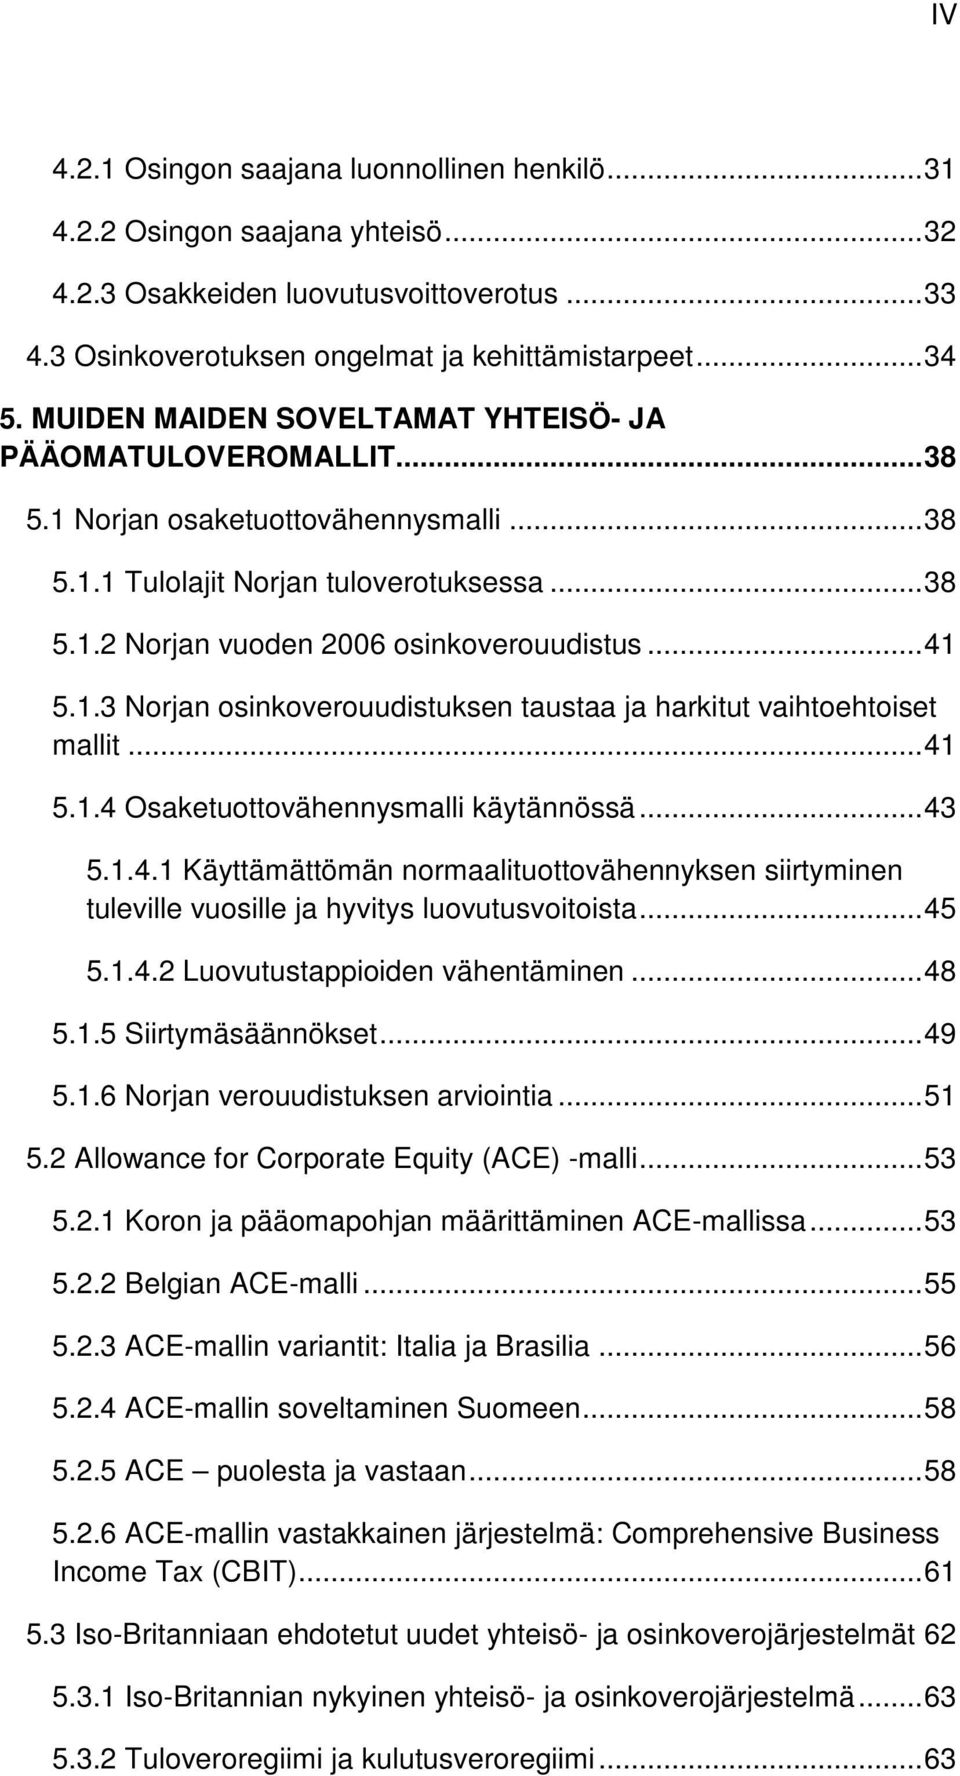 .. 41 5.1.3 Norjan osinkoverouudistuksen taustaa ja harkitut vaihtoehtoiset mallit... 41 5.1.4 Osaketuottovähennysmalli käytännössä... 43 5.1.4.1 Käyttämättömän normaalituottovähennyksen siirtyminen tuleville vuosille ja hyvitys luovutusvoitoista.